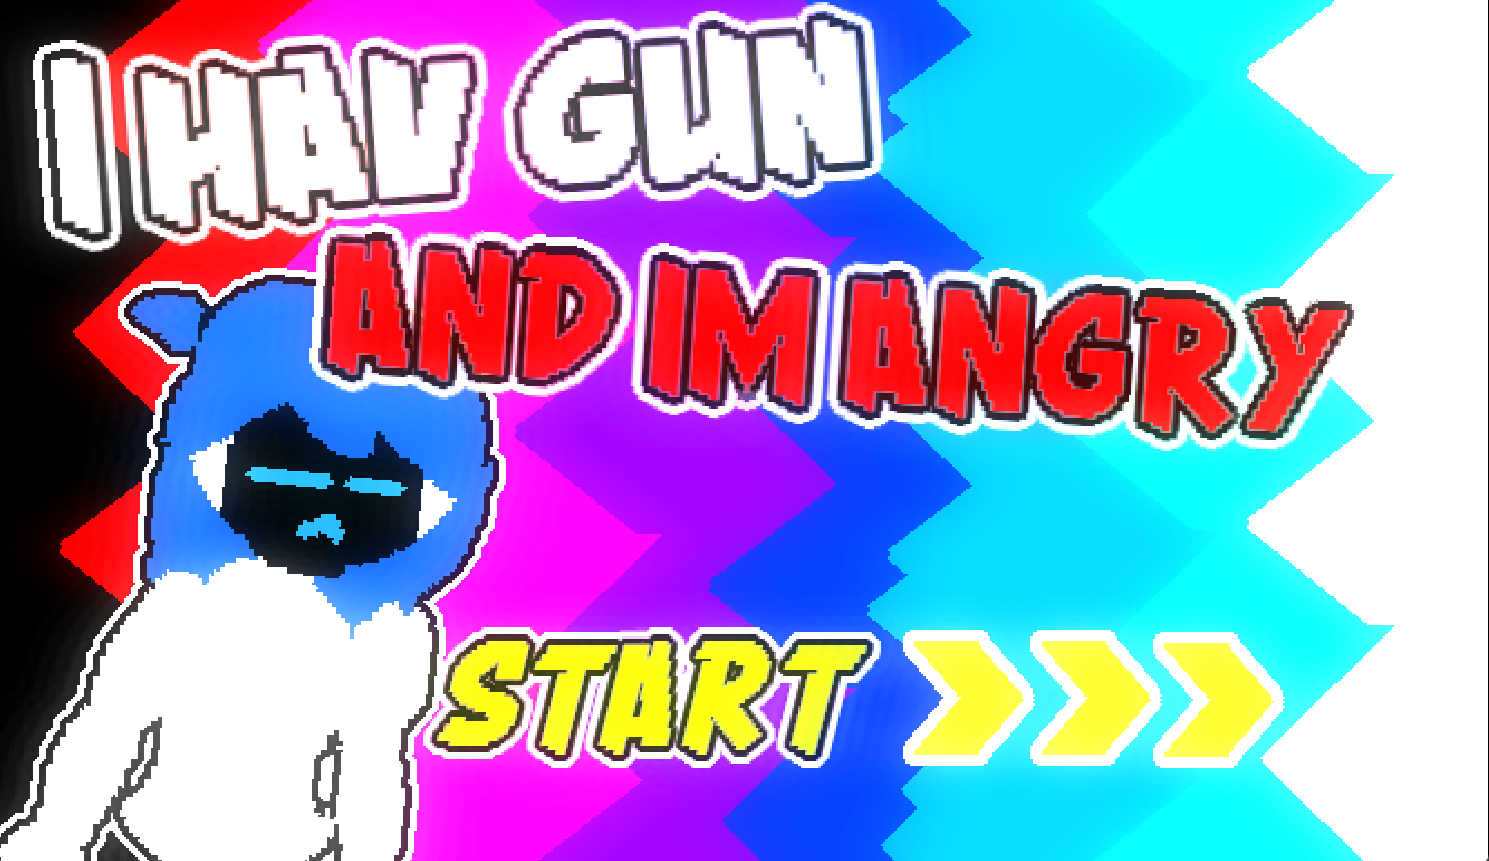 I HAV GUN and IM ANGRY